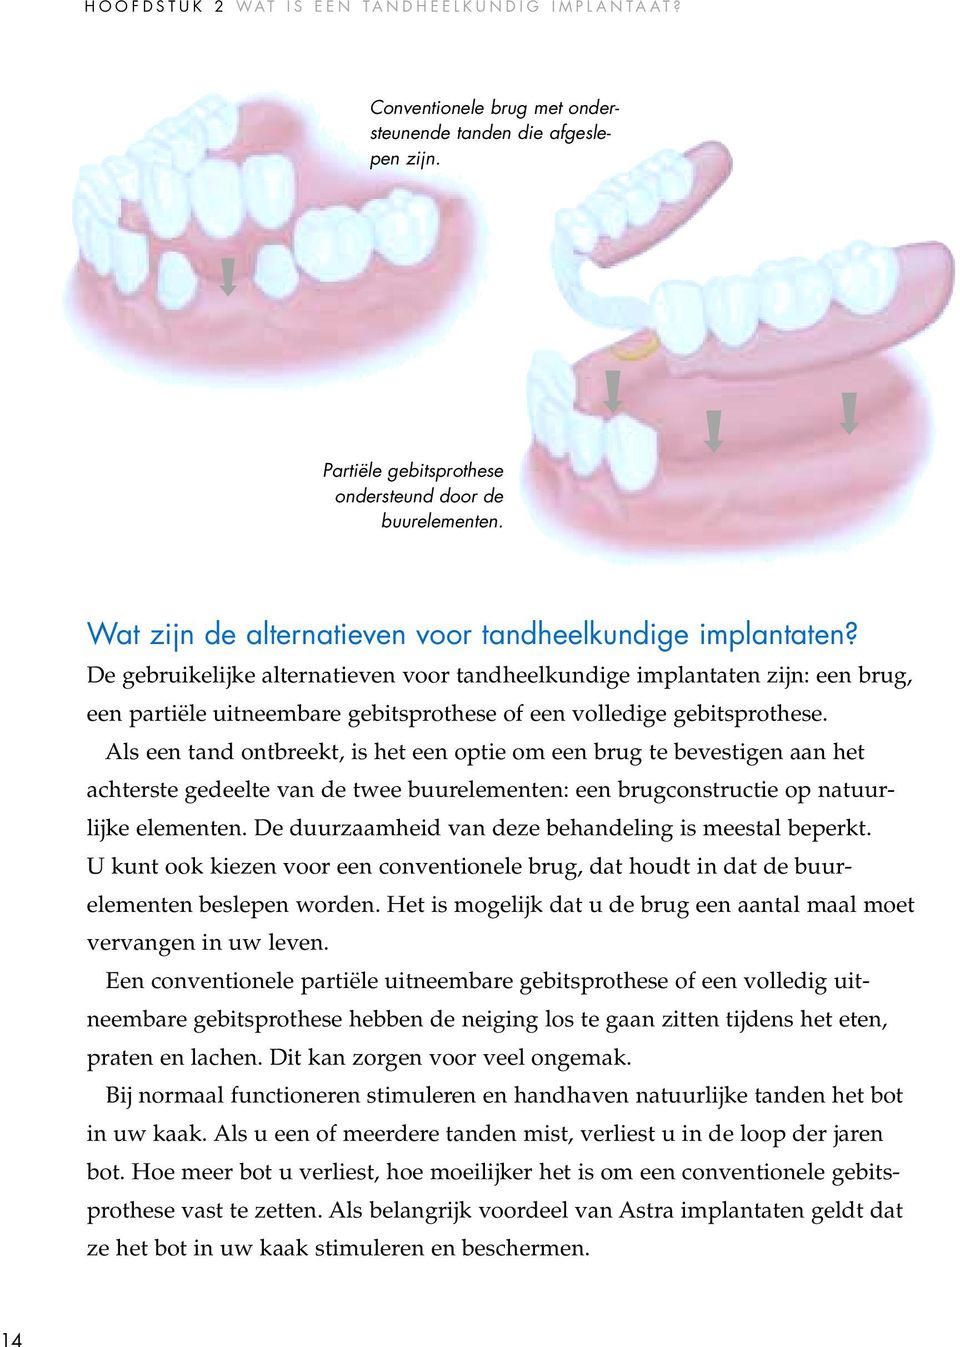 De gebruikelijke alternatieven voor tandheelkundige implantaten zijn: een brug, een partiële uitneembare gebitsprothese of een volledige gebitsprothese.